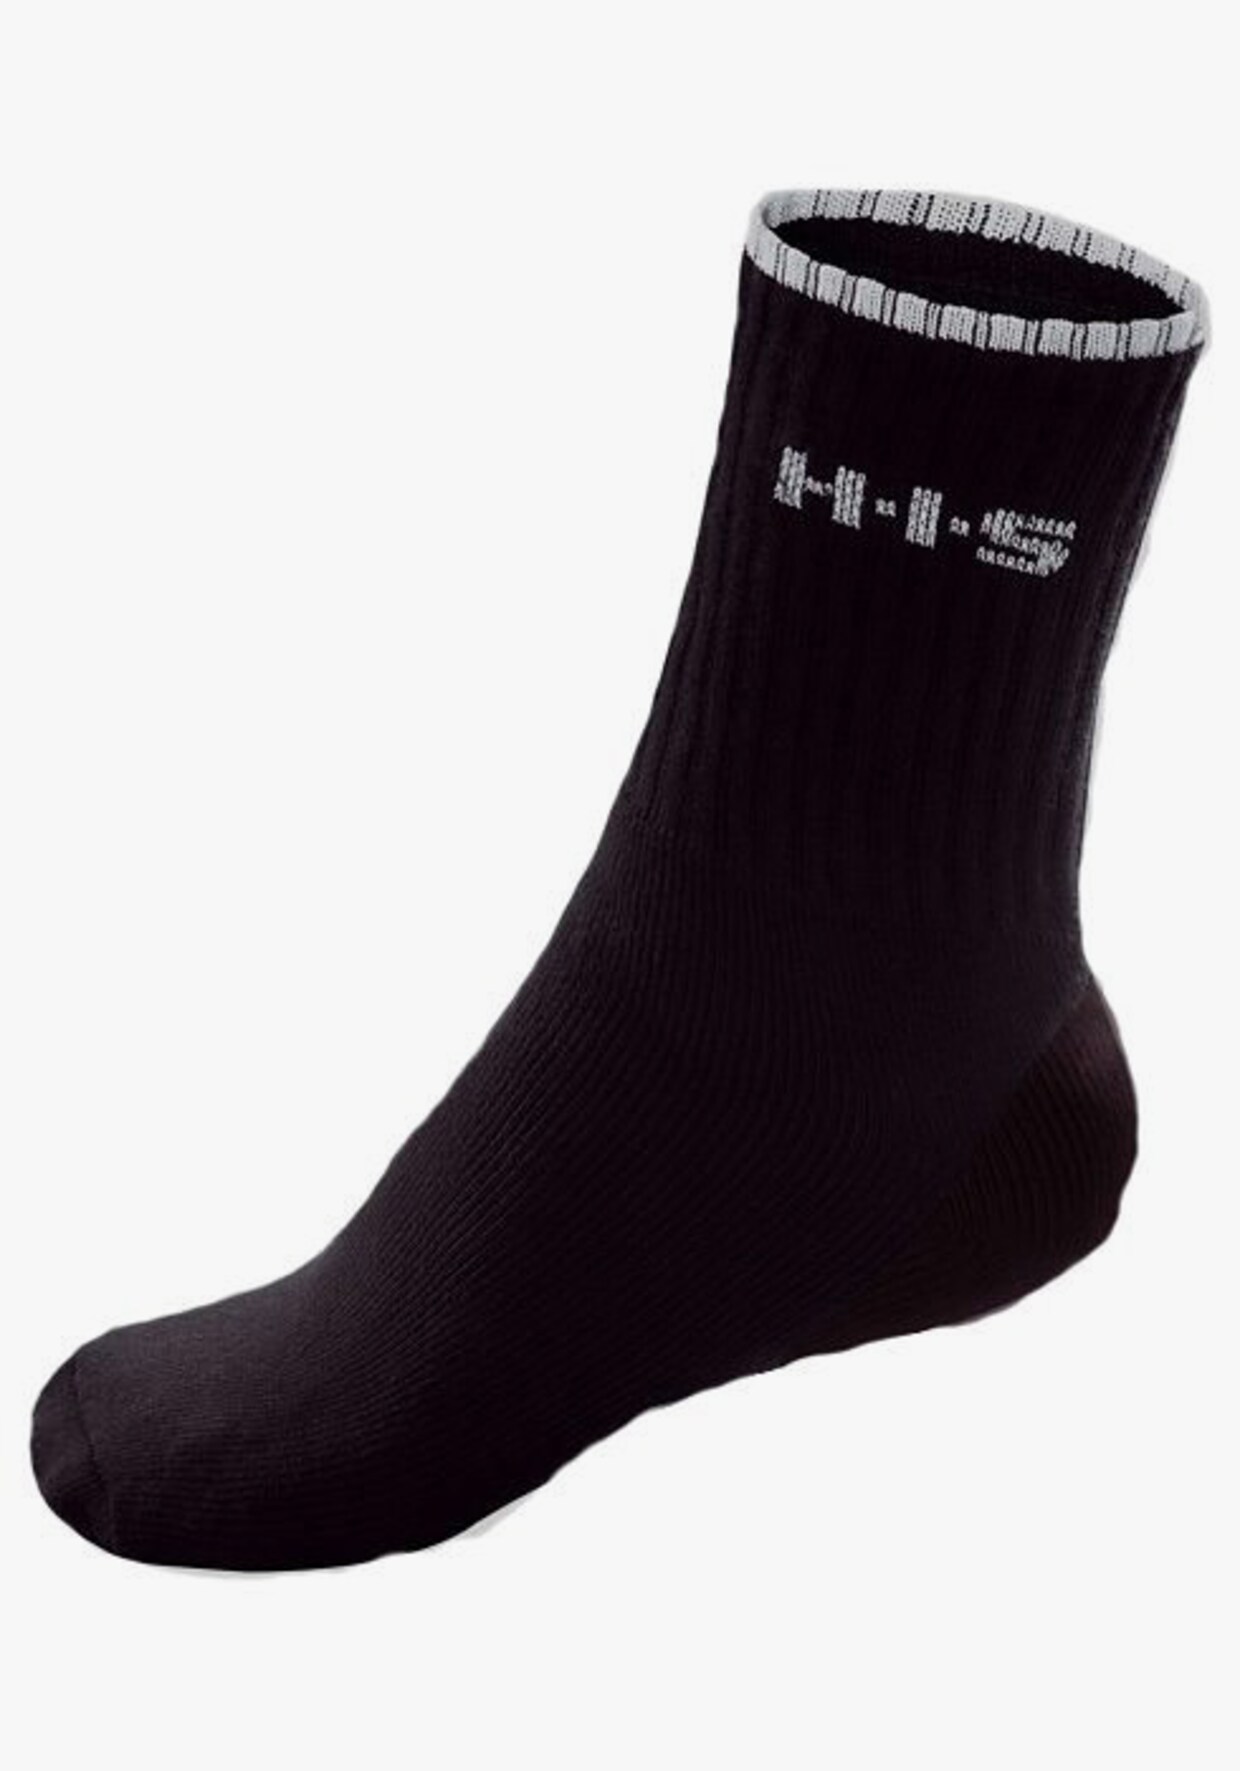 H.I.S Sportsocken - schwarz